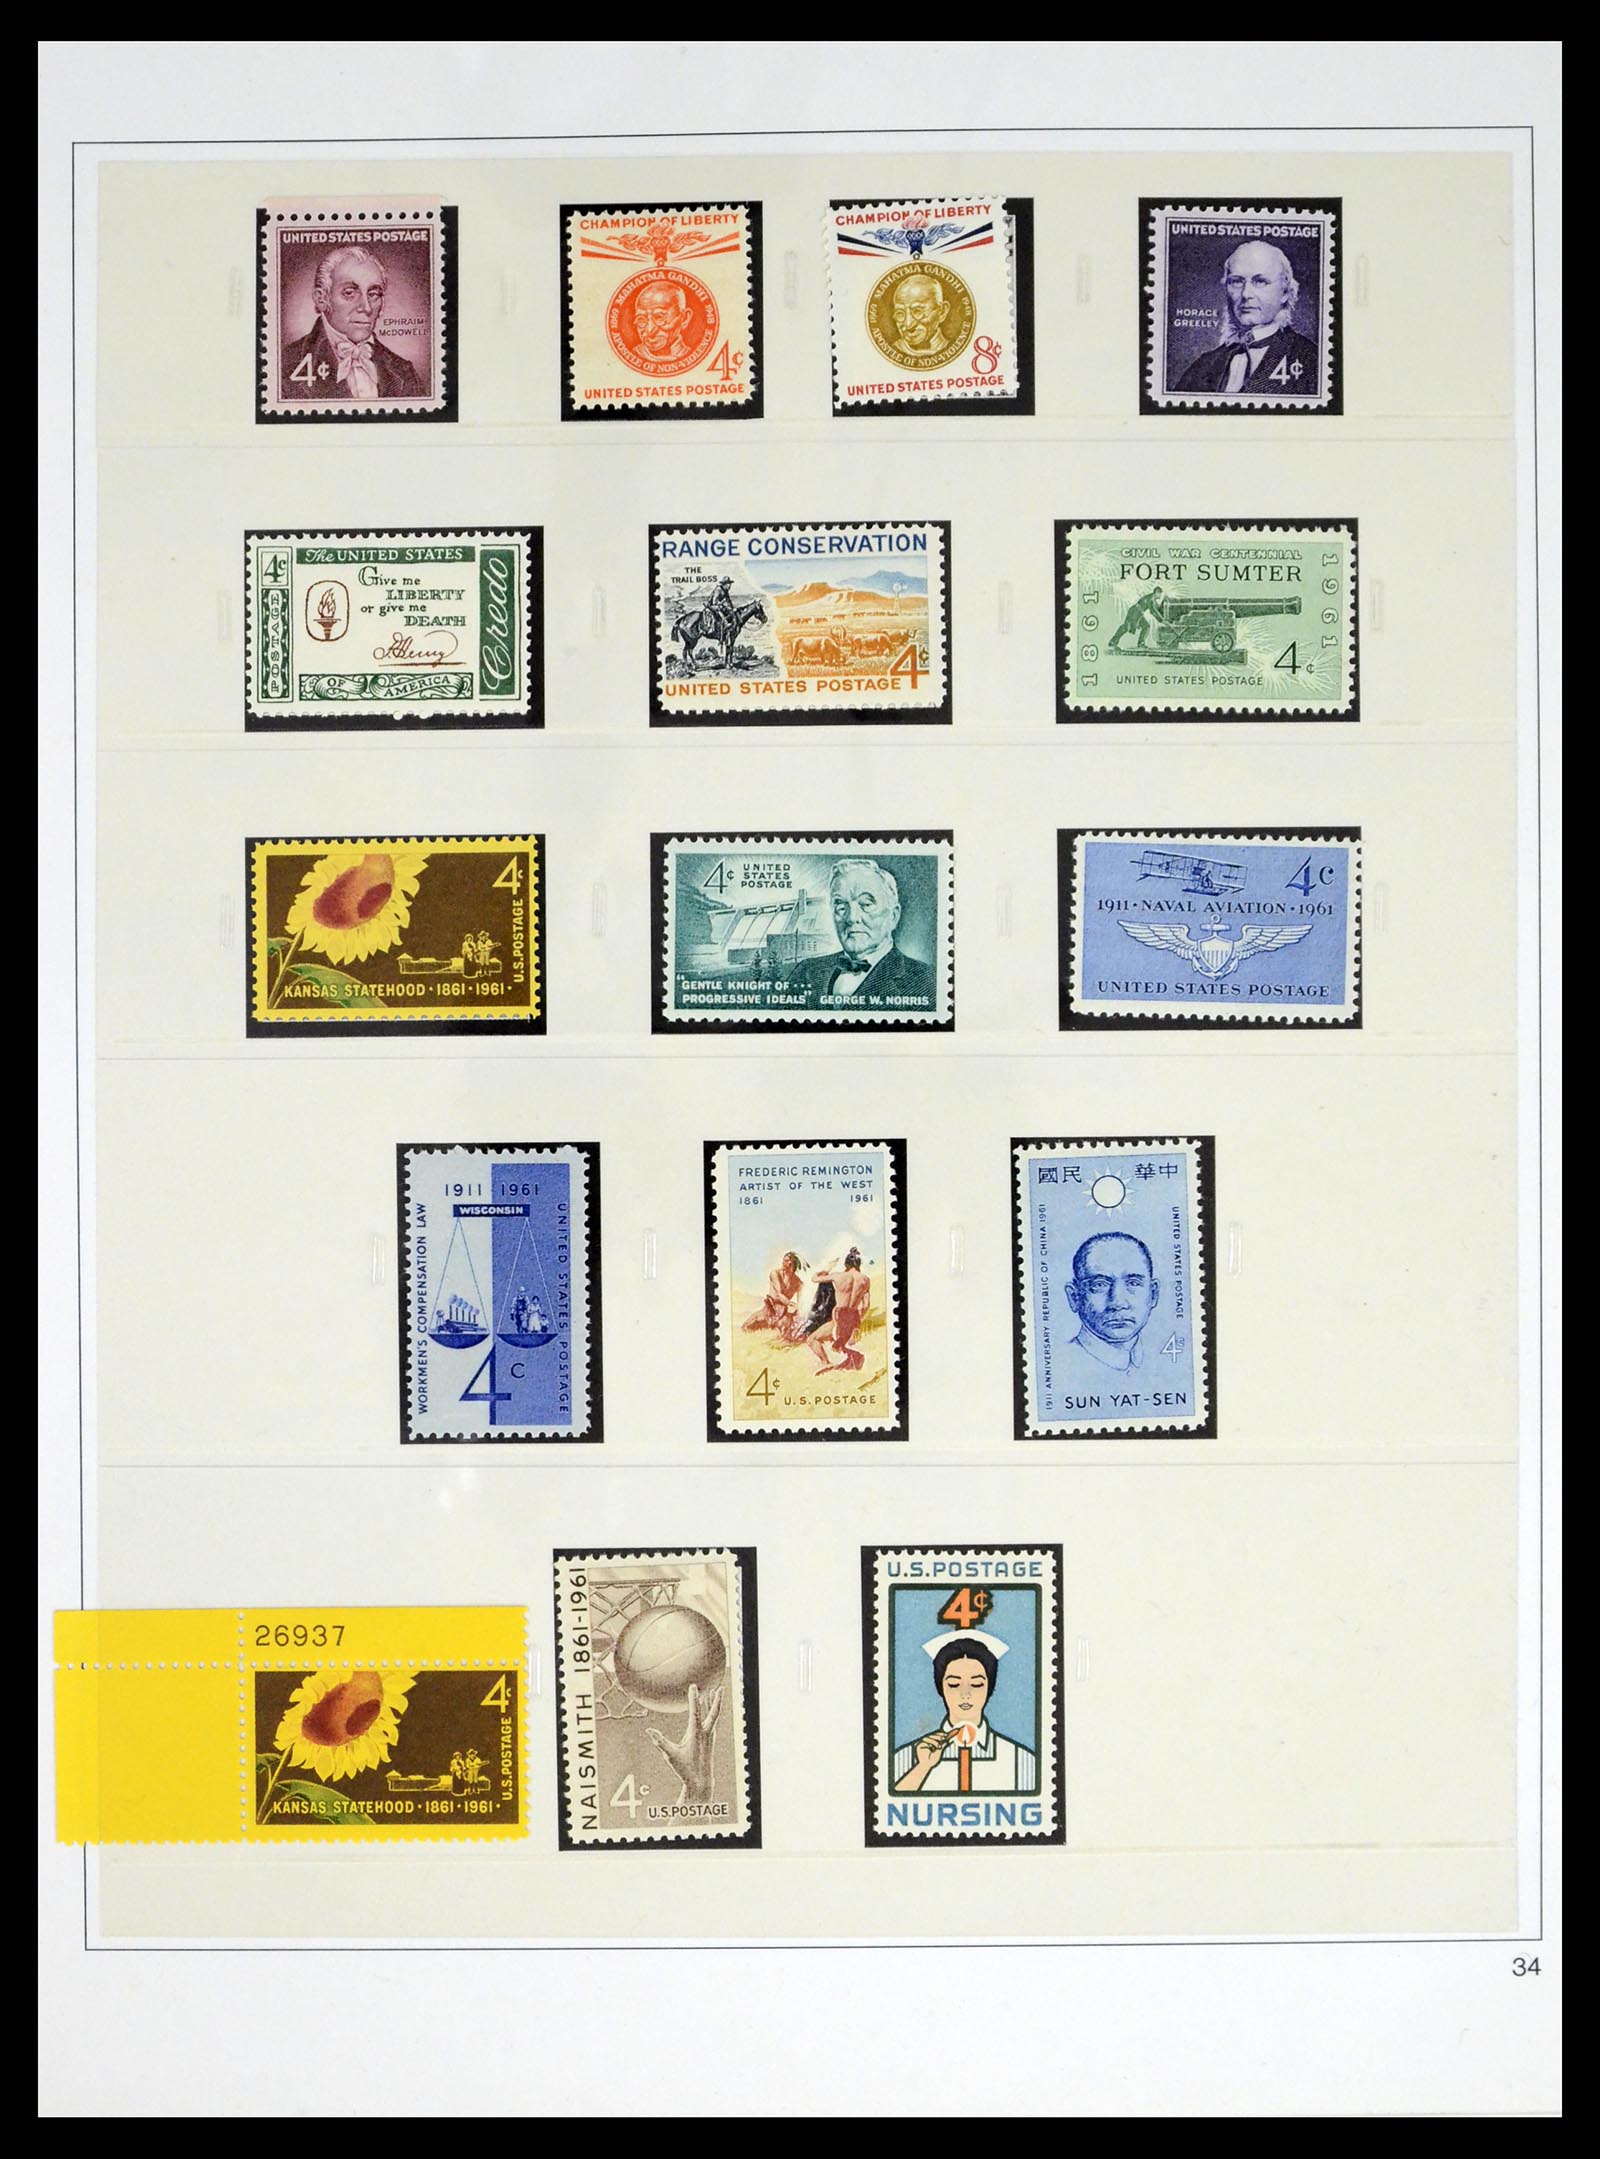 37551 074 - Stamp collection 37551 USA 1851-2001.